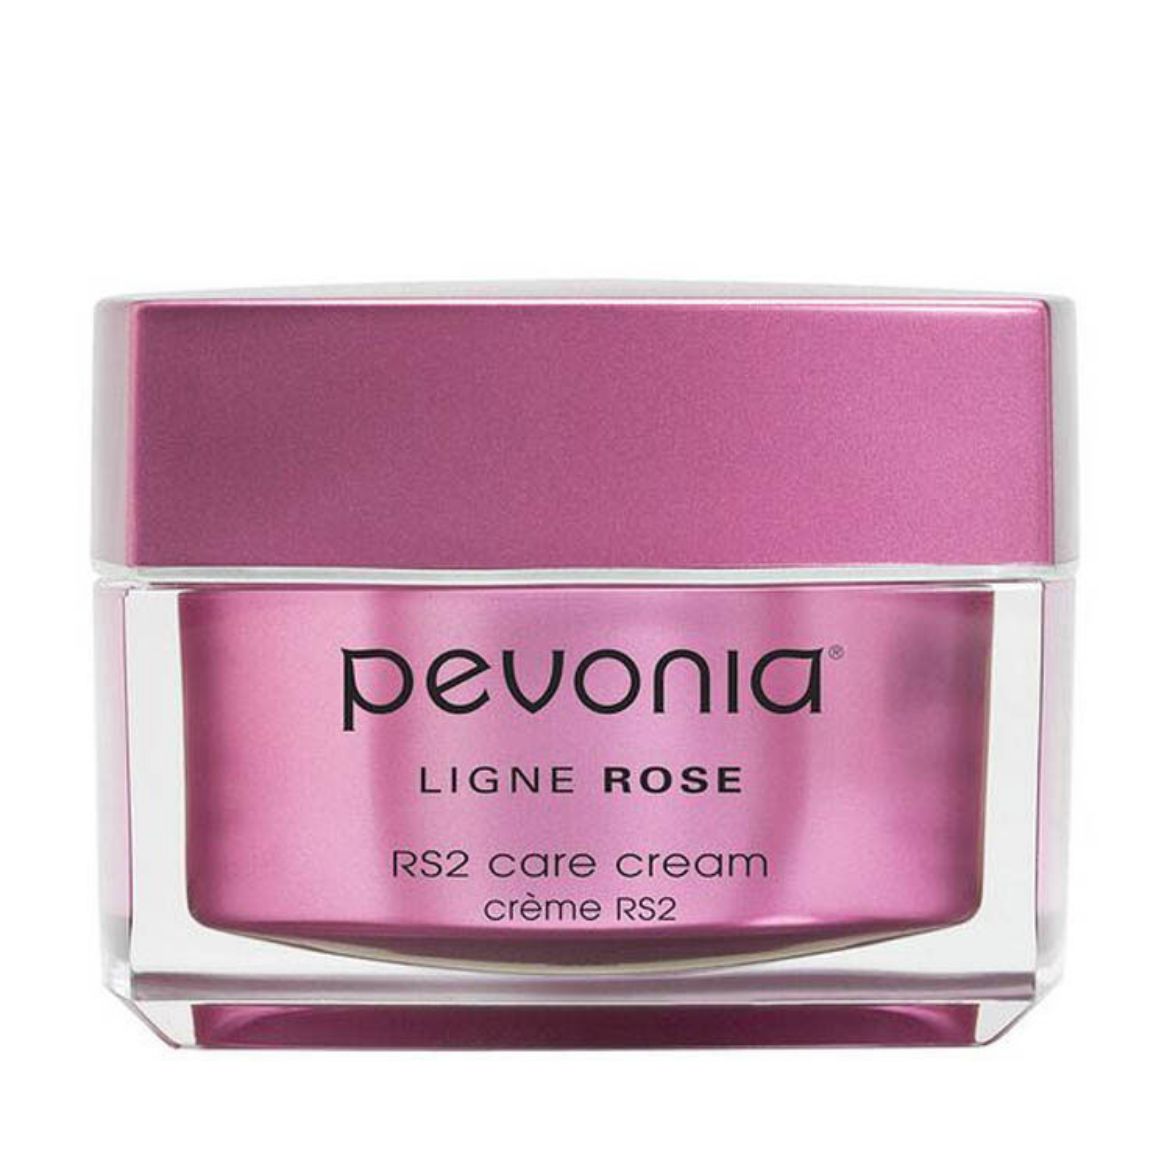 Image of Pevonia RS2 Care Cream (50ml)